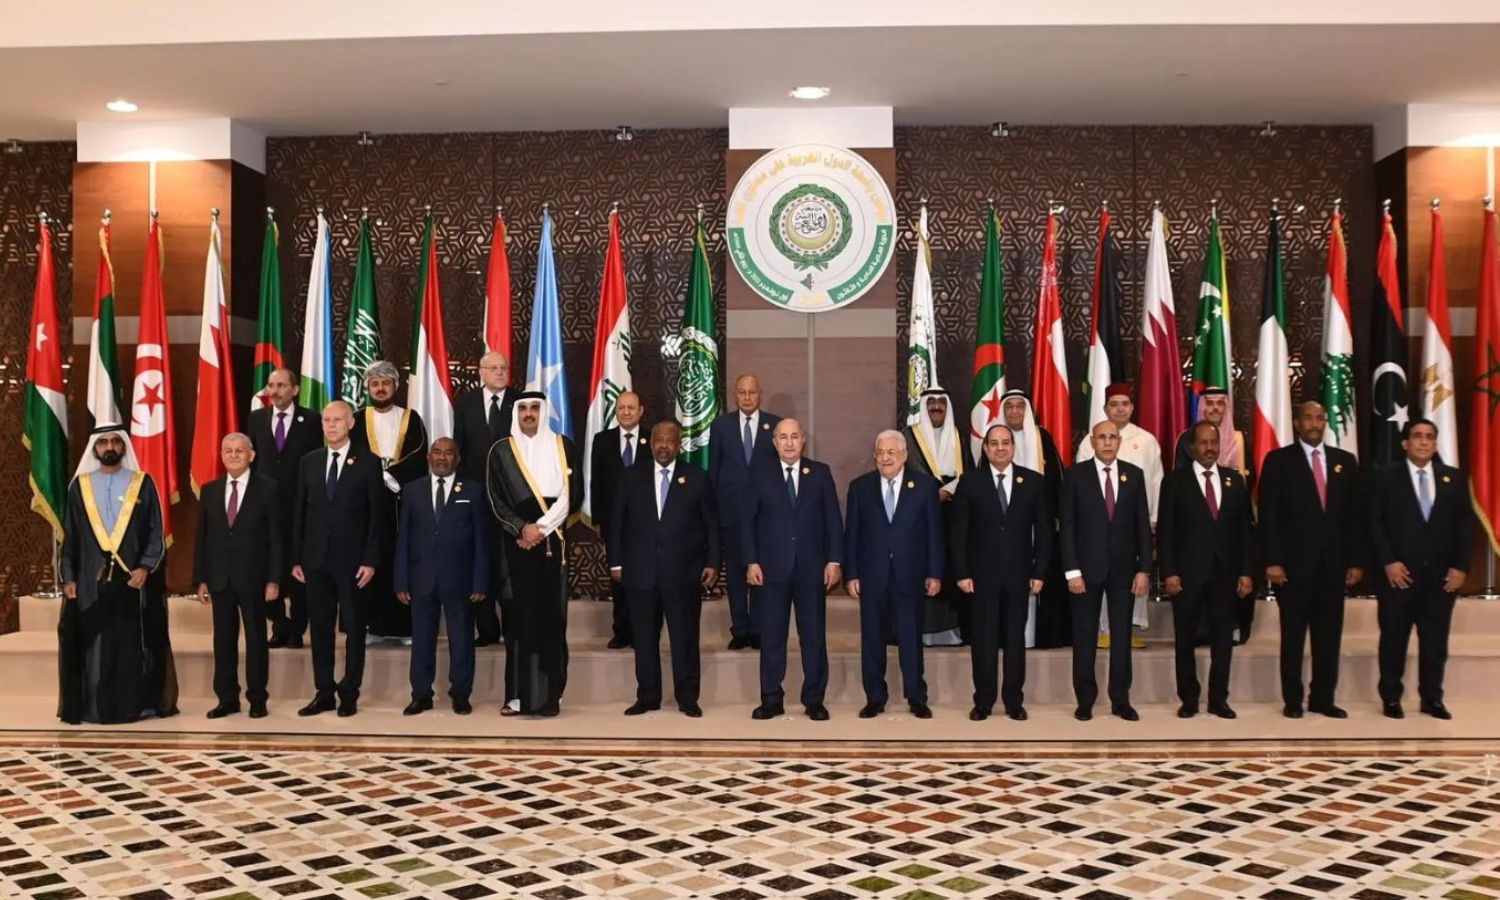 Arab leaders participating in the Algiers summit - November 1, 2022 (Arab summit website)